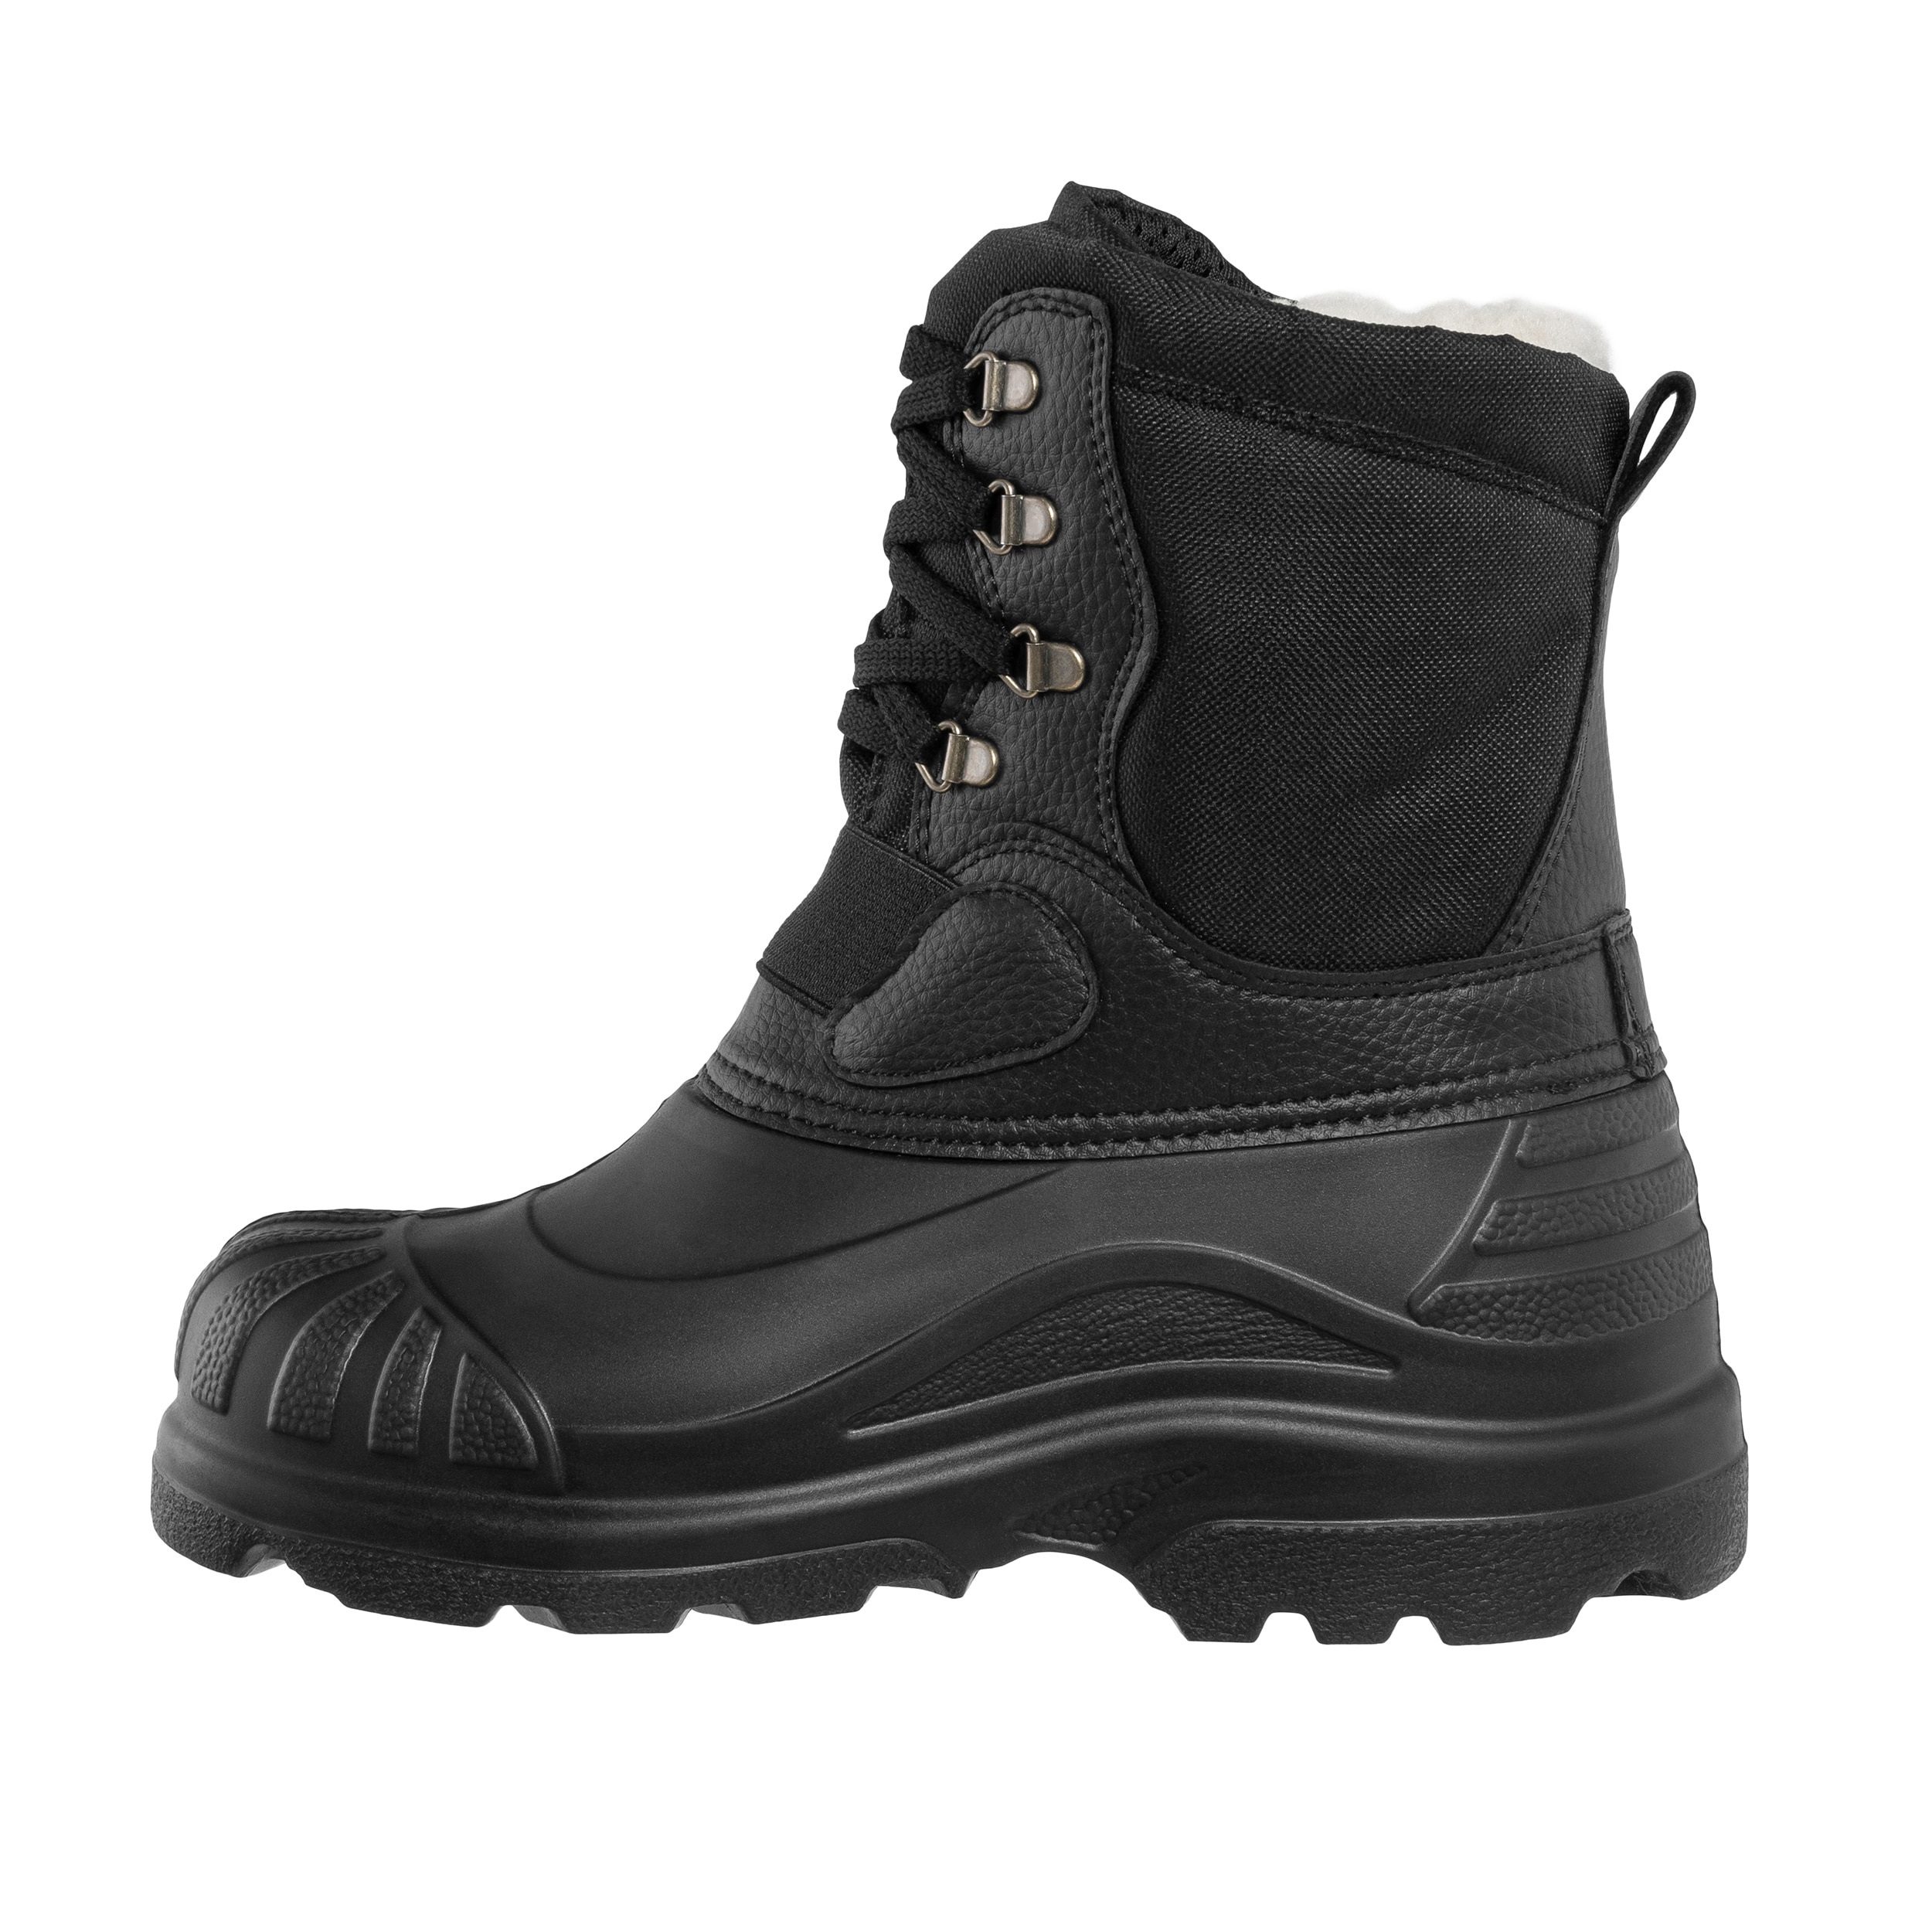 Buty śniegowce Lemigo Pionier 908 - Czarne